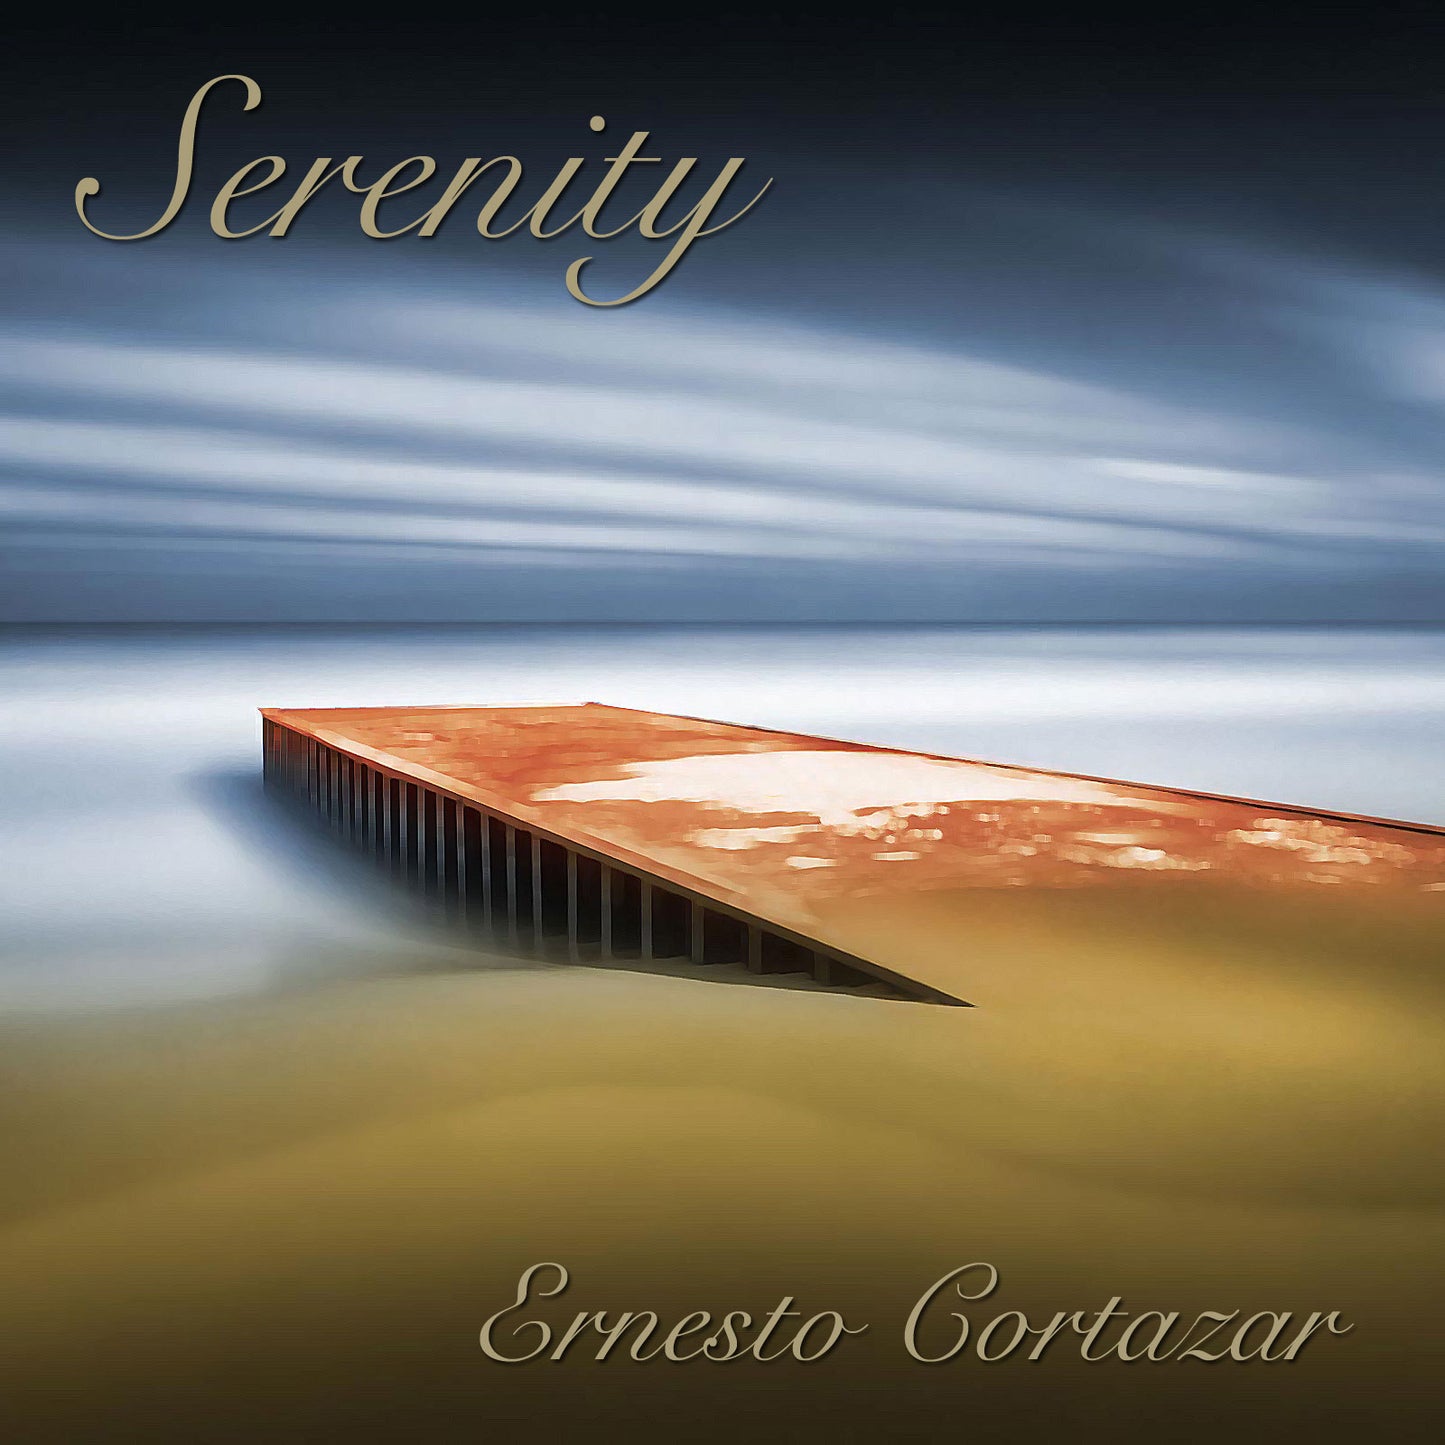 Serenity MP3 Album Composed by Ernesto Cortazar